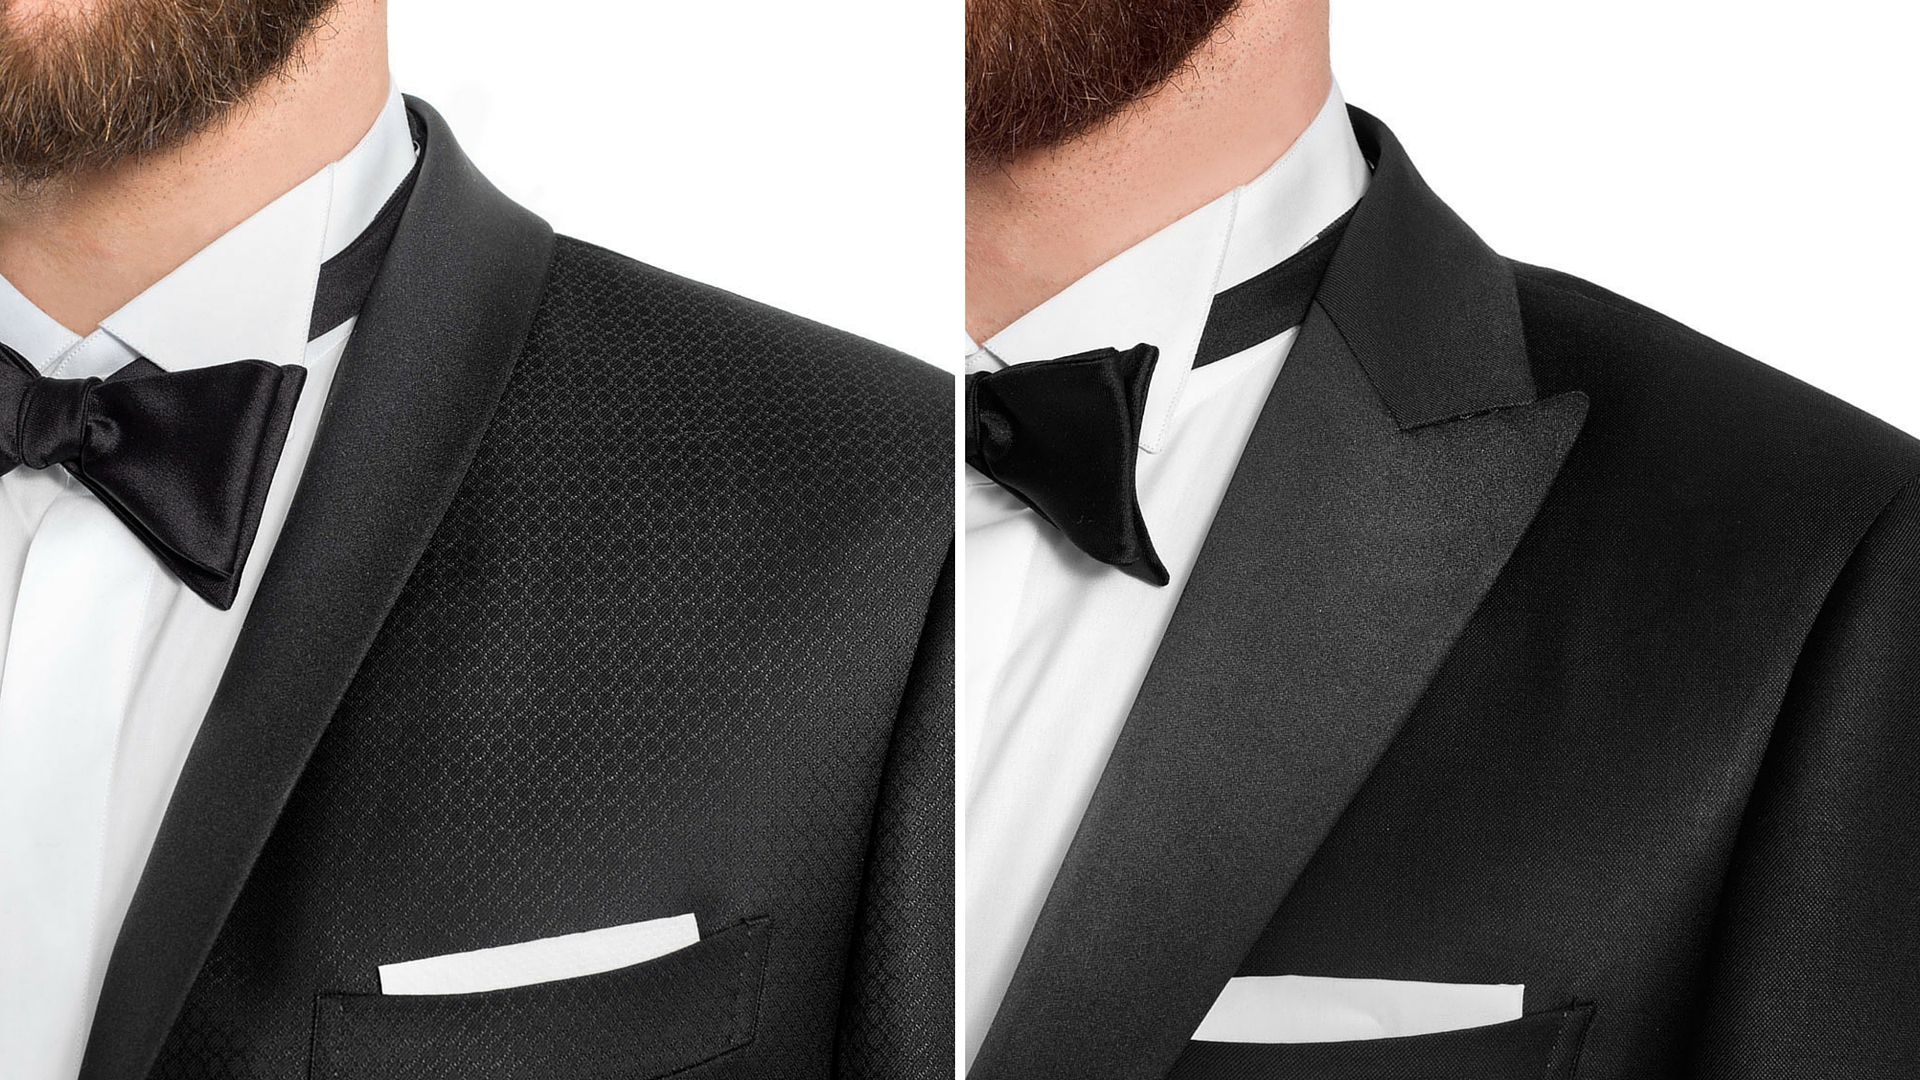 Tuxedo detail on jacket lapels: shawl and peaked (pointed)